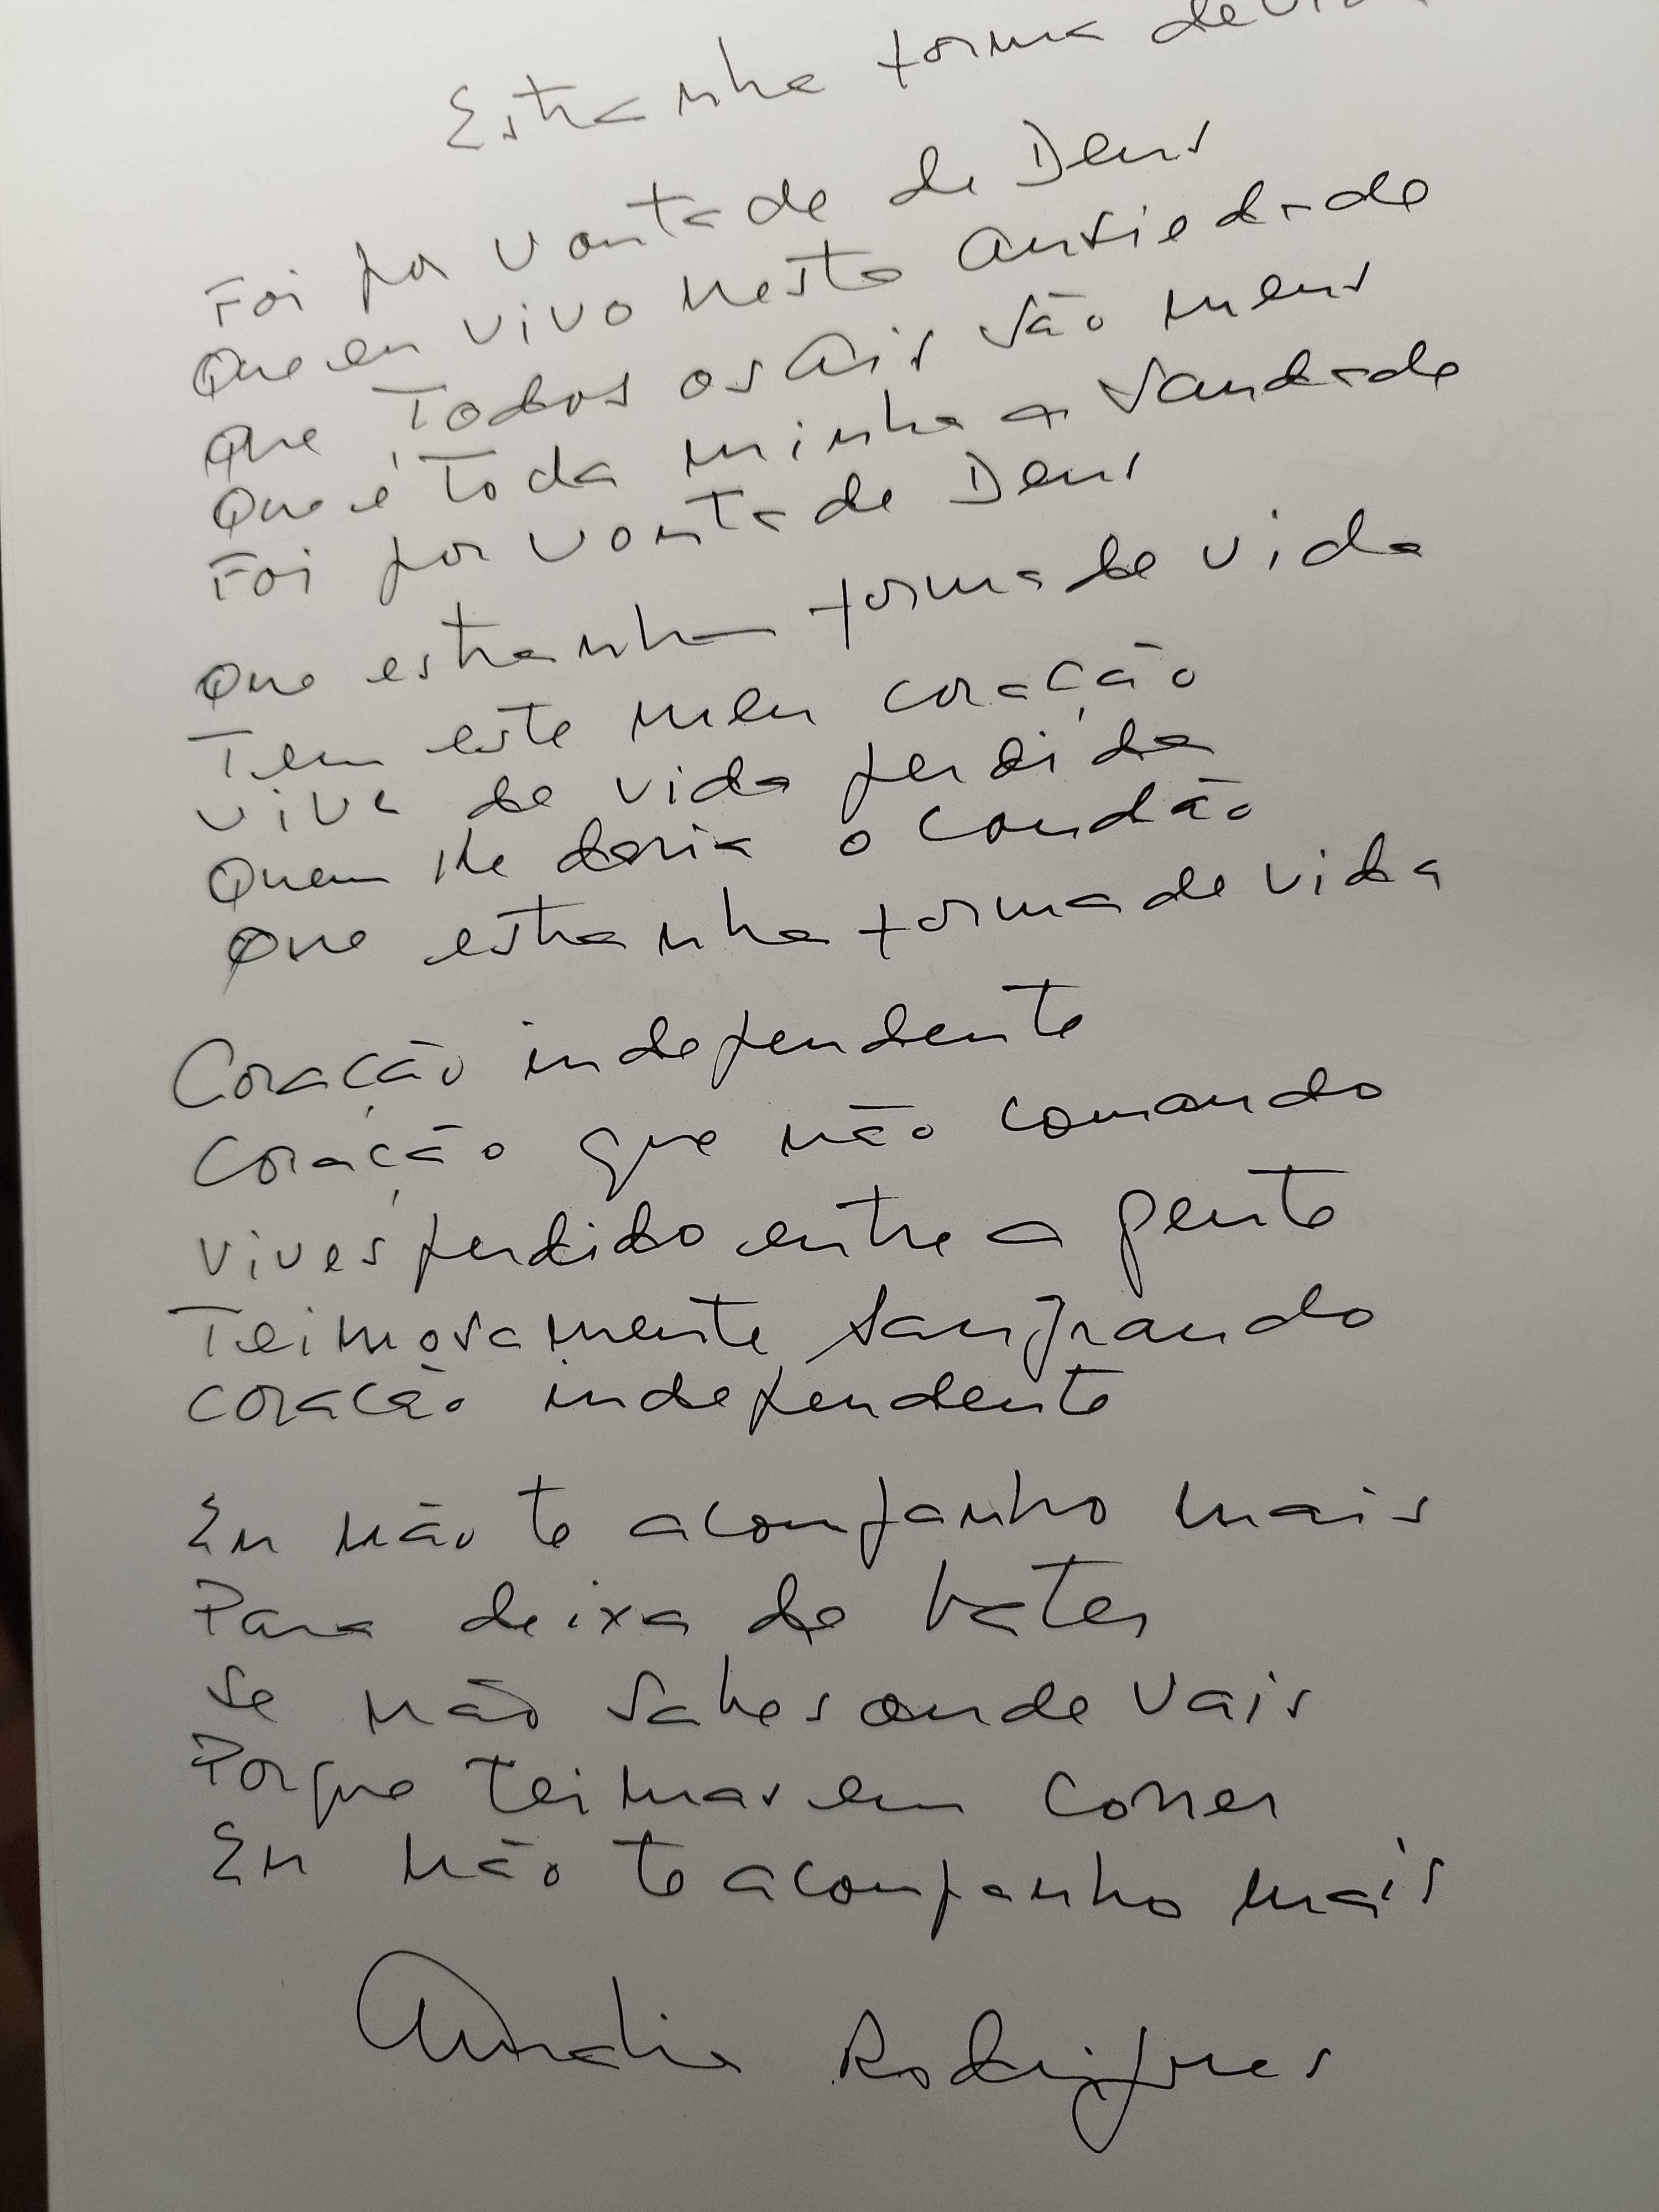 LIVRO ESTRANHA FORMA DE VIDA - Manuscrito por Amália Rodrigues